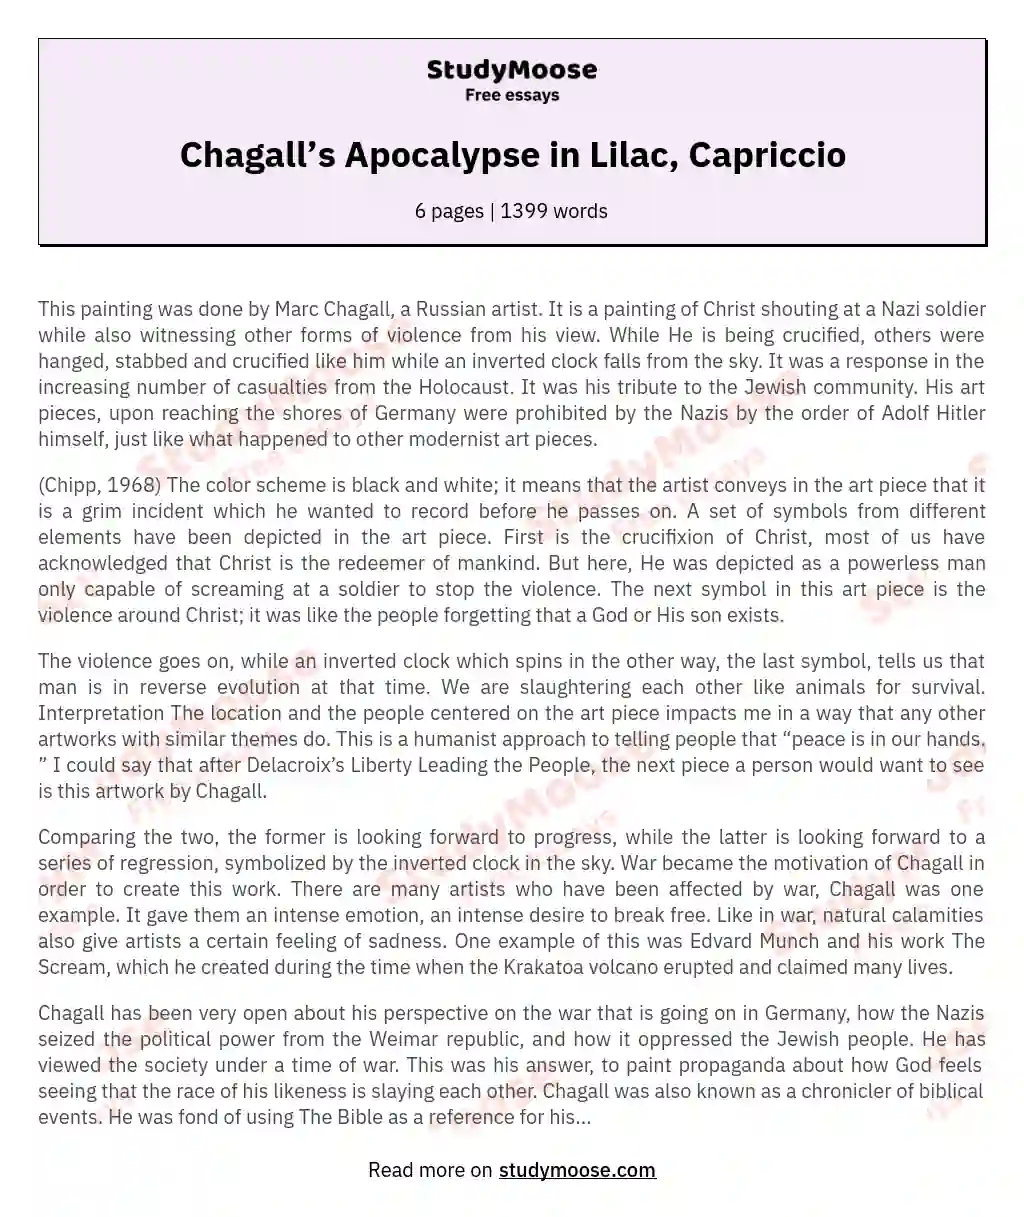 Chagall’s Apocalypse in Lilac, Capriccio essay